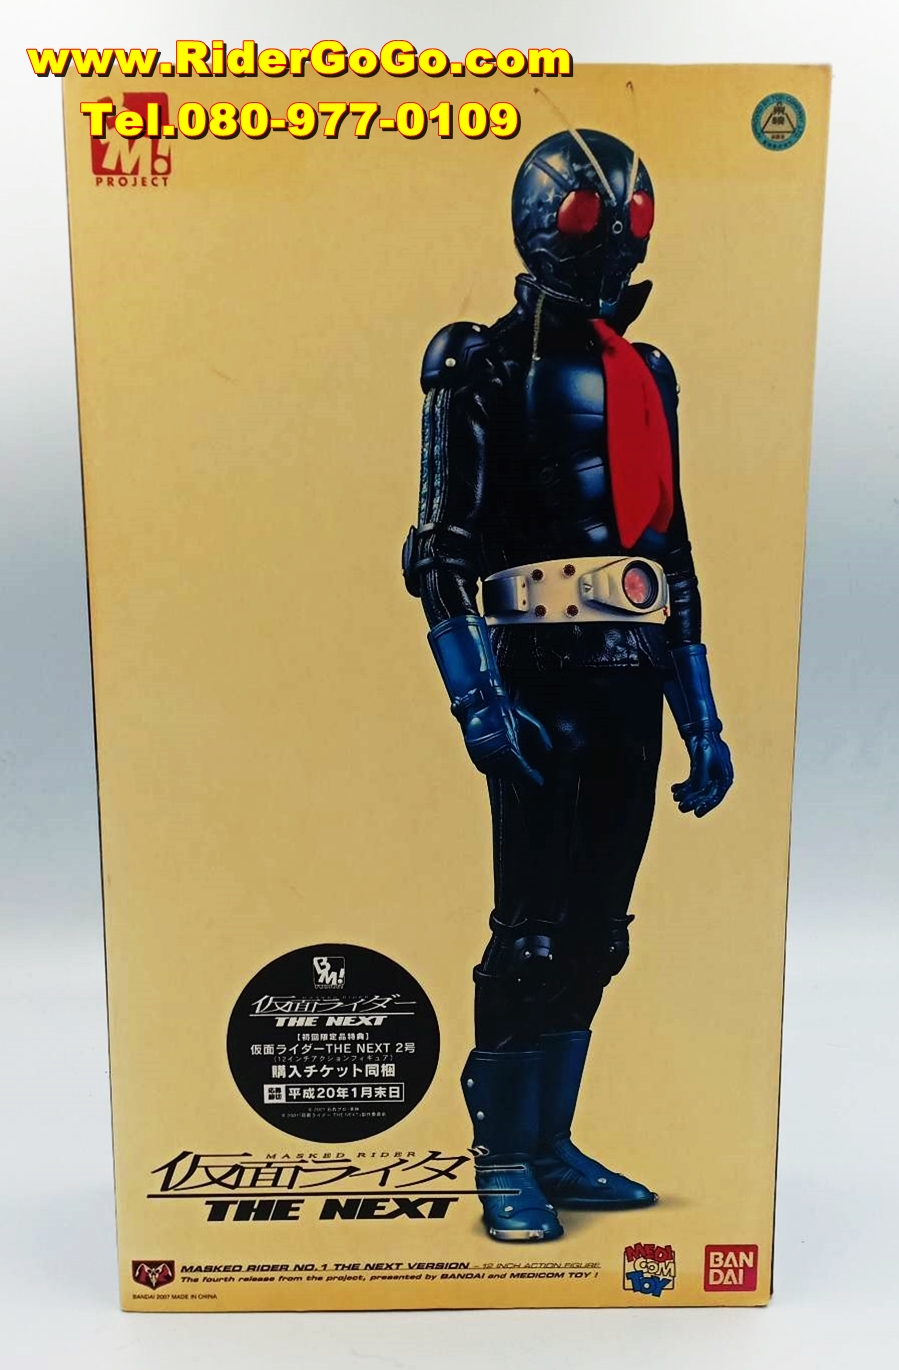 โมเดลชุดผ้ามาสค์ไรเดอร์หมายเลข1 หรือมาสค์ไรเดอร์วี1 Medicom Toy Project BM Masked Rider No.1 The Next Version ของแท้จากประเทศญี่ปุ่น รูปที่ 1